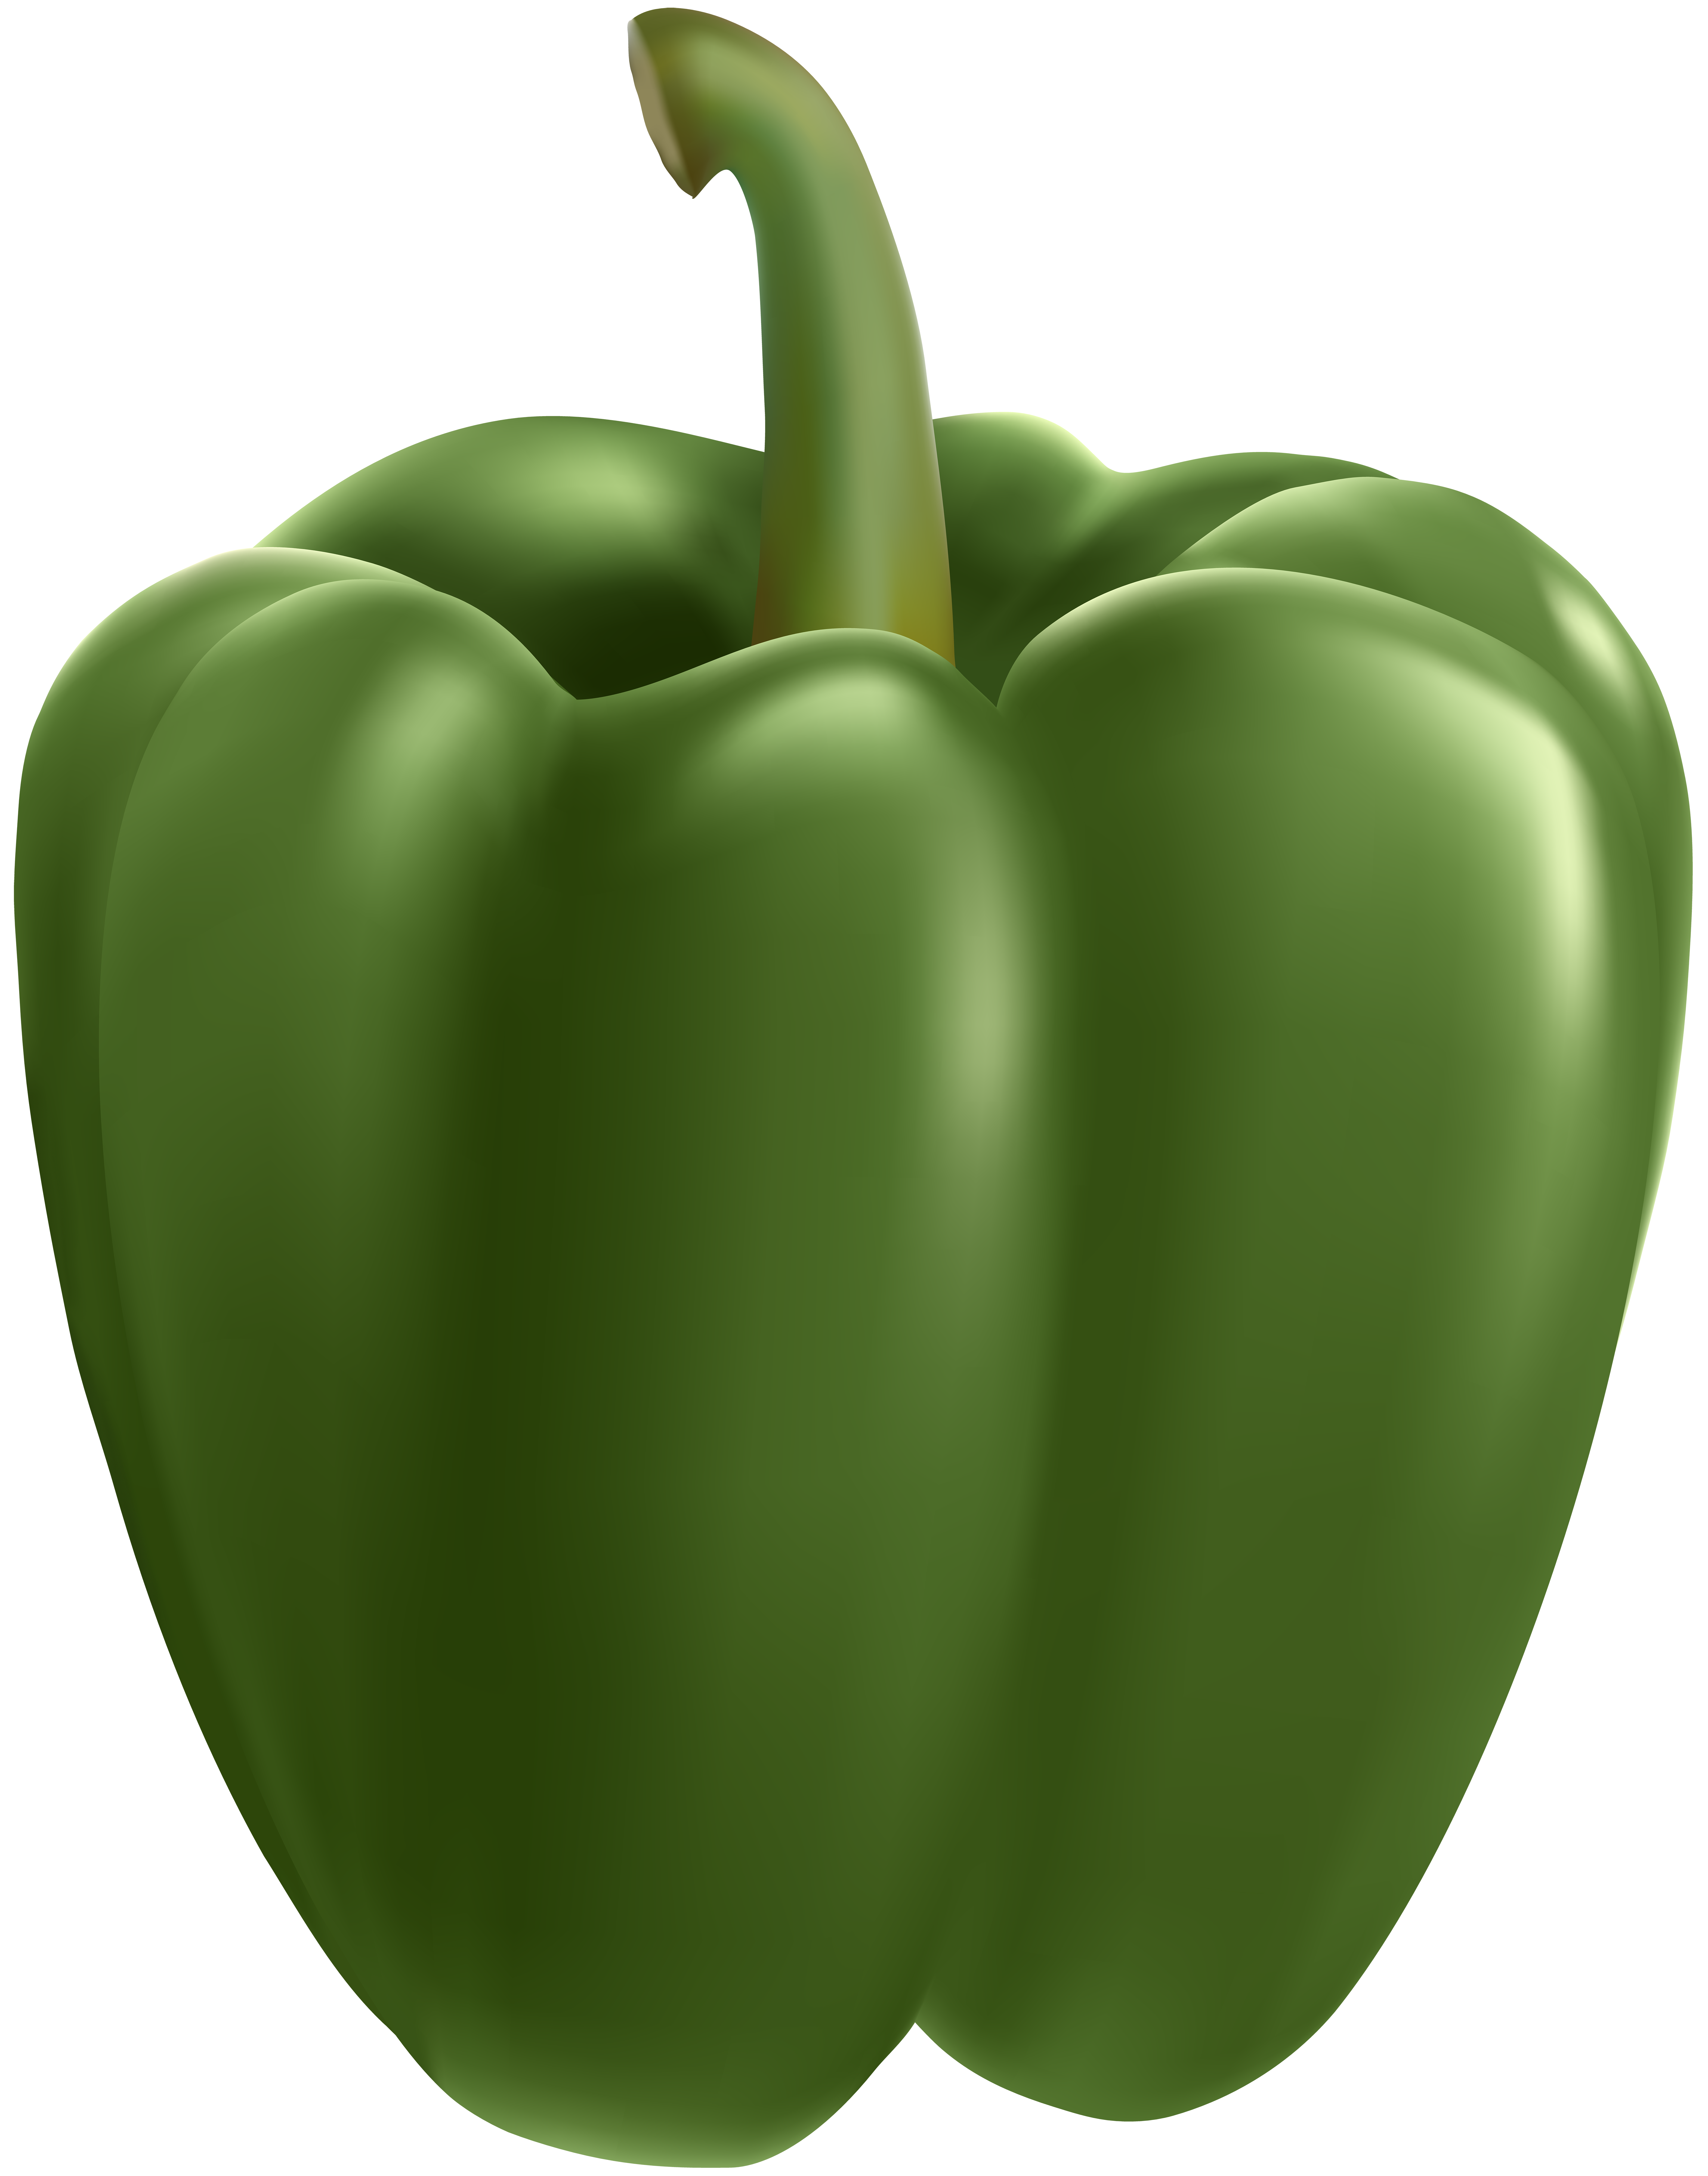 Green Bell Pepper Transparent Clip Art Image